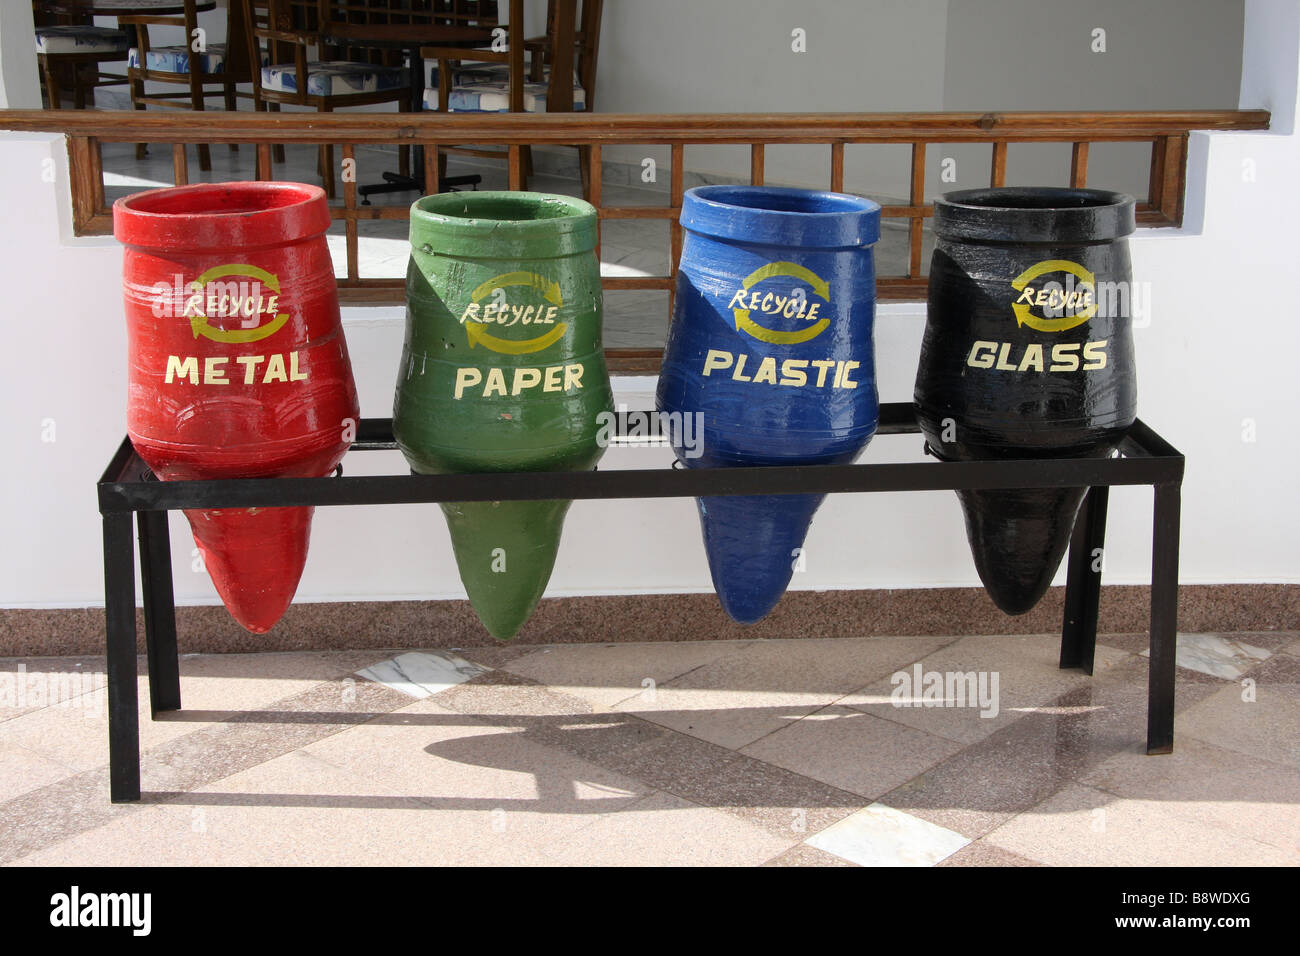 Recycling facilities at Hilton hotel, Dahab, Egypt Stock Photo